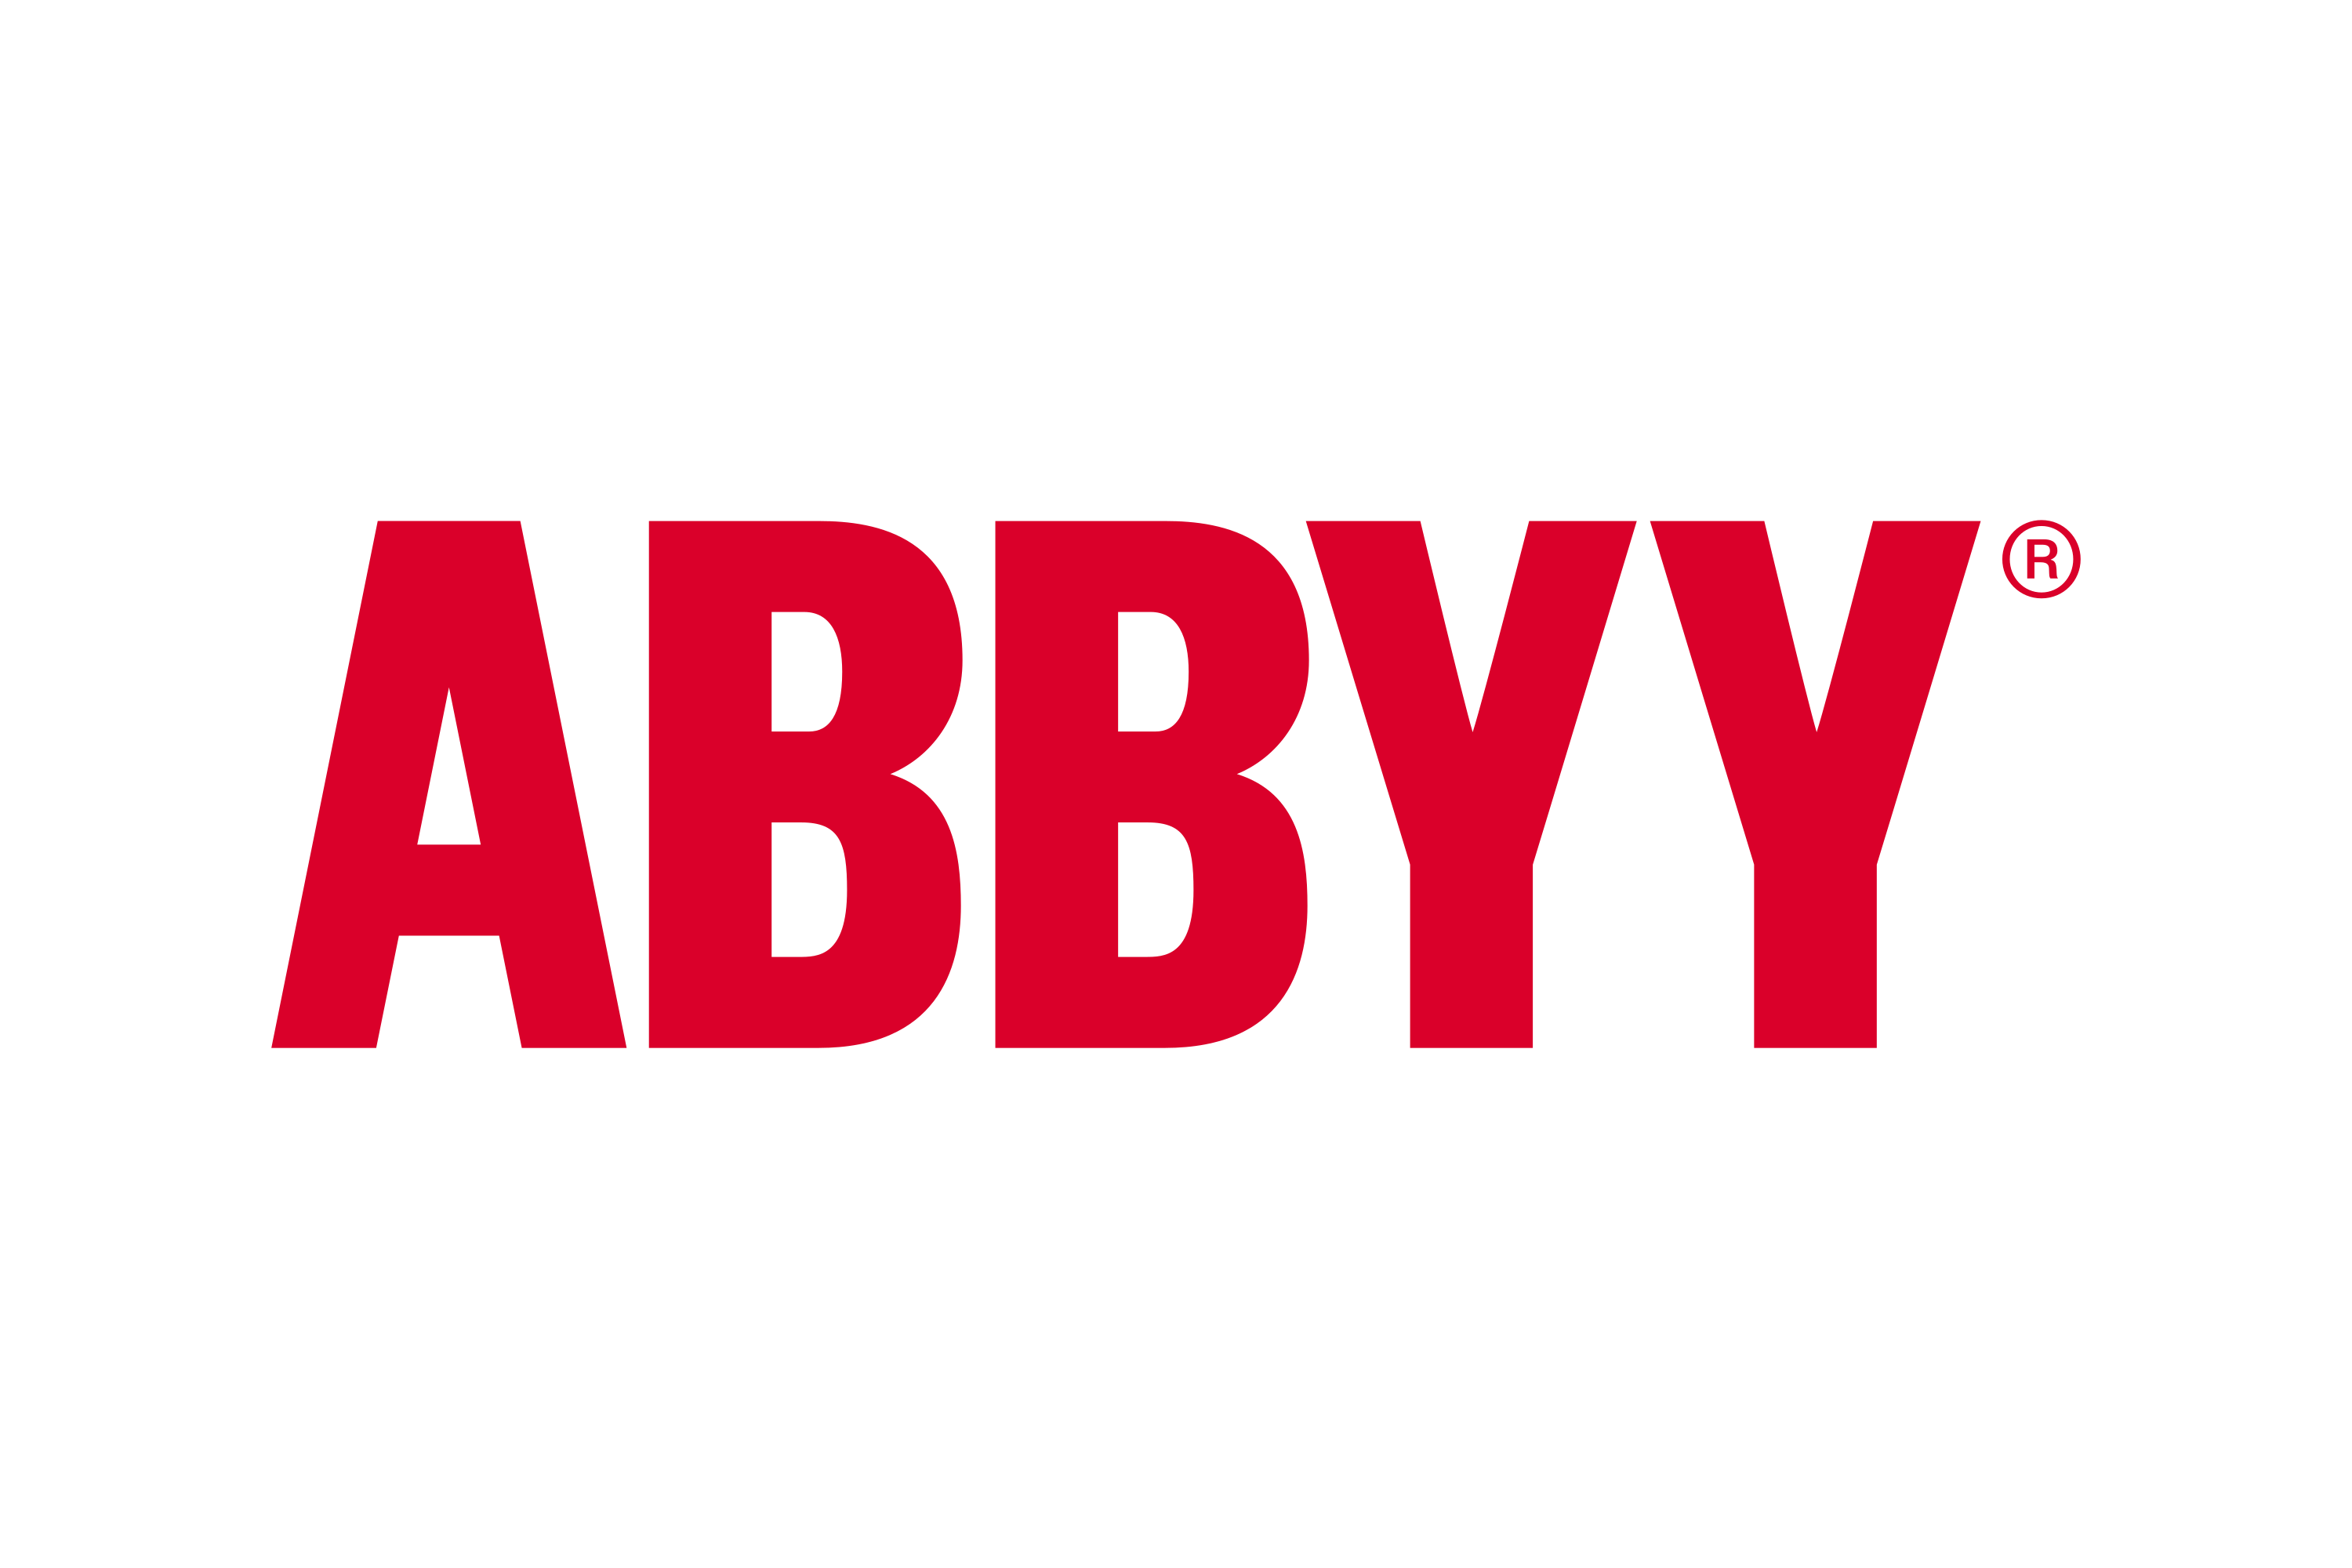 Російська компанія ABBYY продовжує працювати в Україні, незважаючи на заборону та війну, - ЗМІ